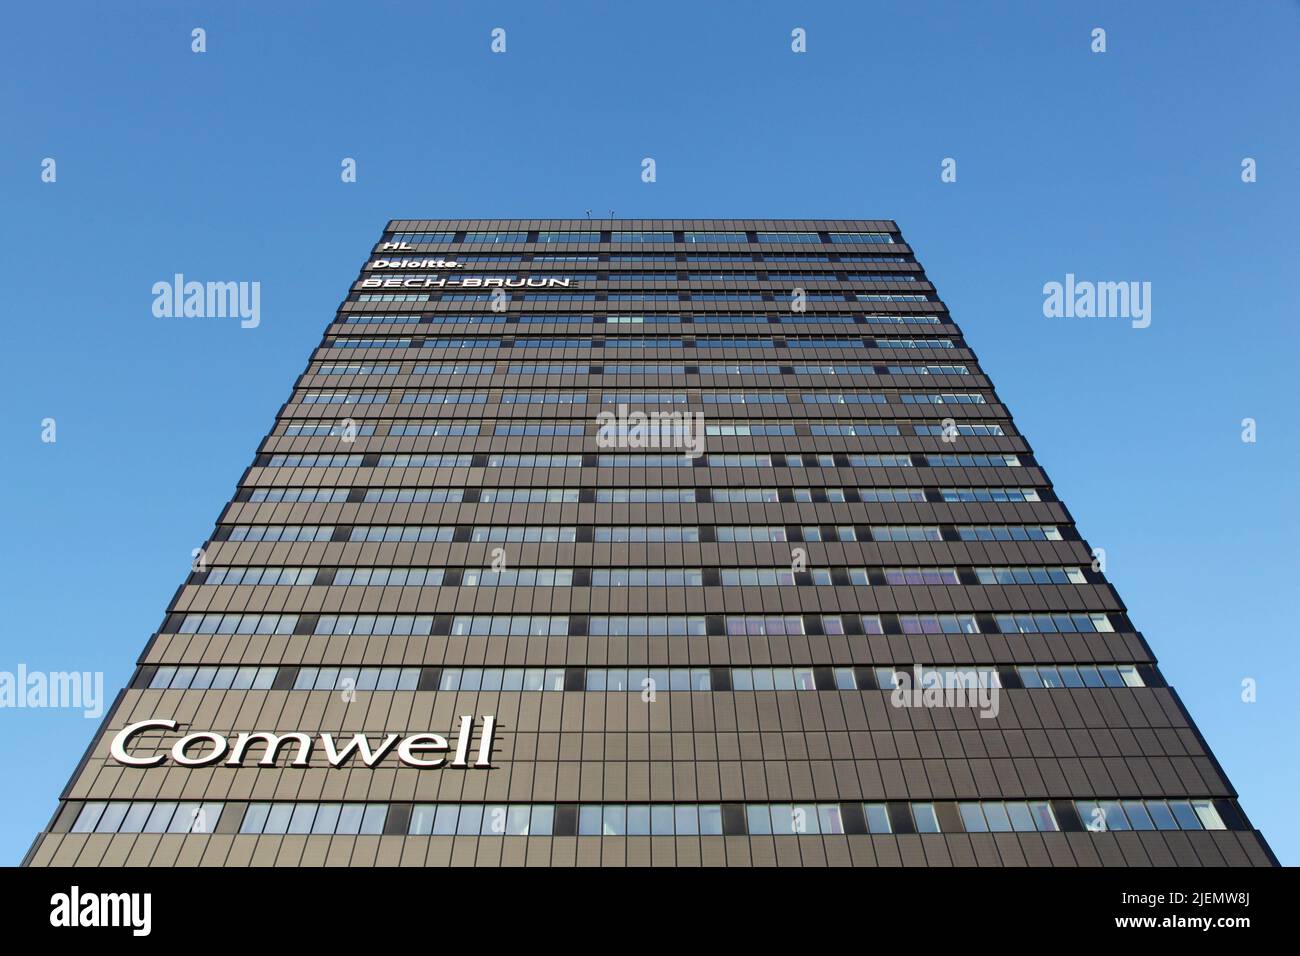 Aarhus, Dinamarca - 25 de enero de 2015:El Comwell Hotel es un hotel de conferencias de 4 estrellas situado en una de las direcciones más céntricas de Aarhus Foto de stock